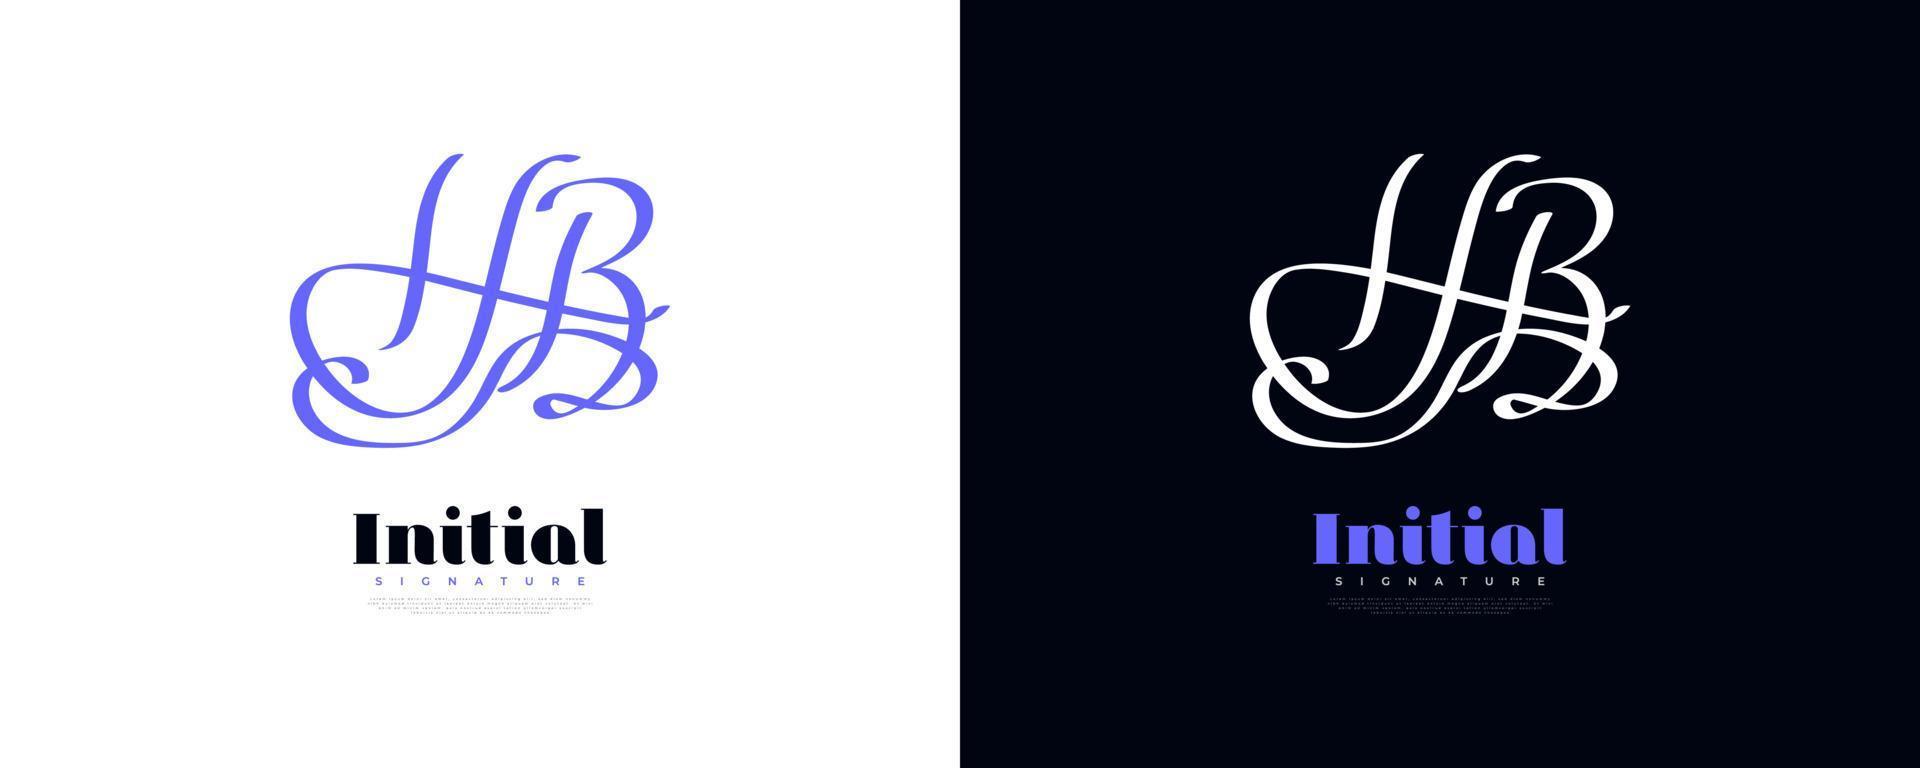 anfängliches h- und b-logo-design im eleganten und minimalistischen handschriftstil. hb Signatur-Logo-Design vektor